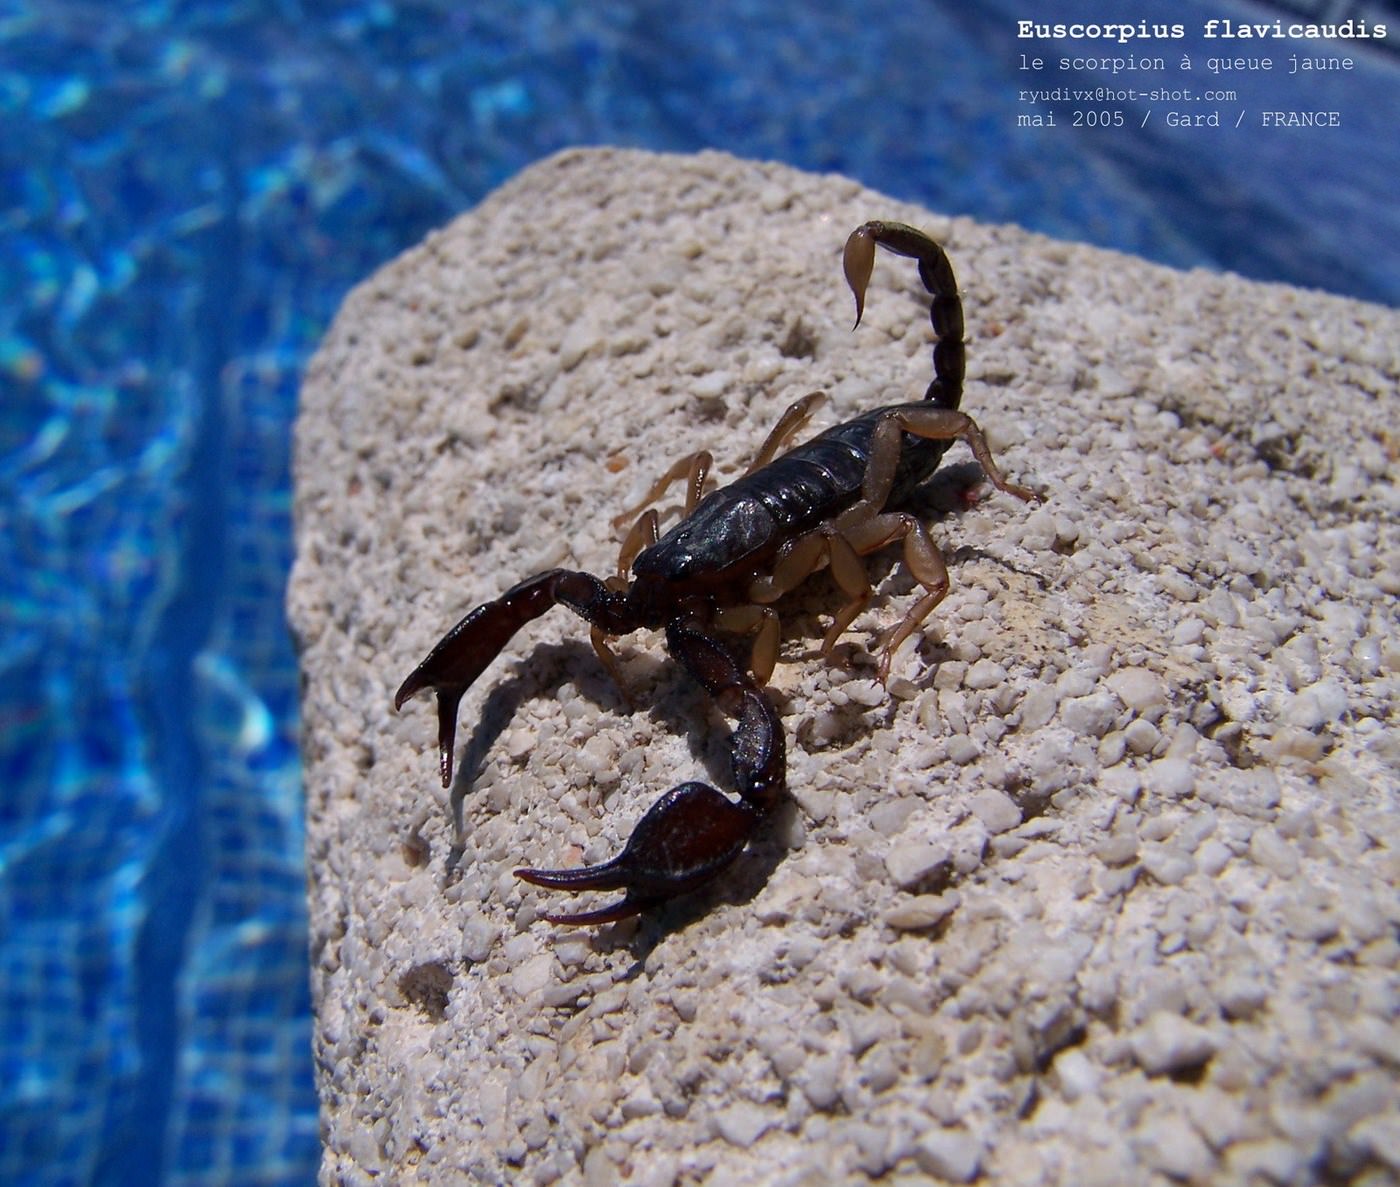 Scorpions Le scorpion à queue jaune, Euscorpius flavicaudis